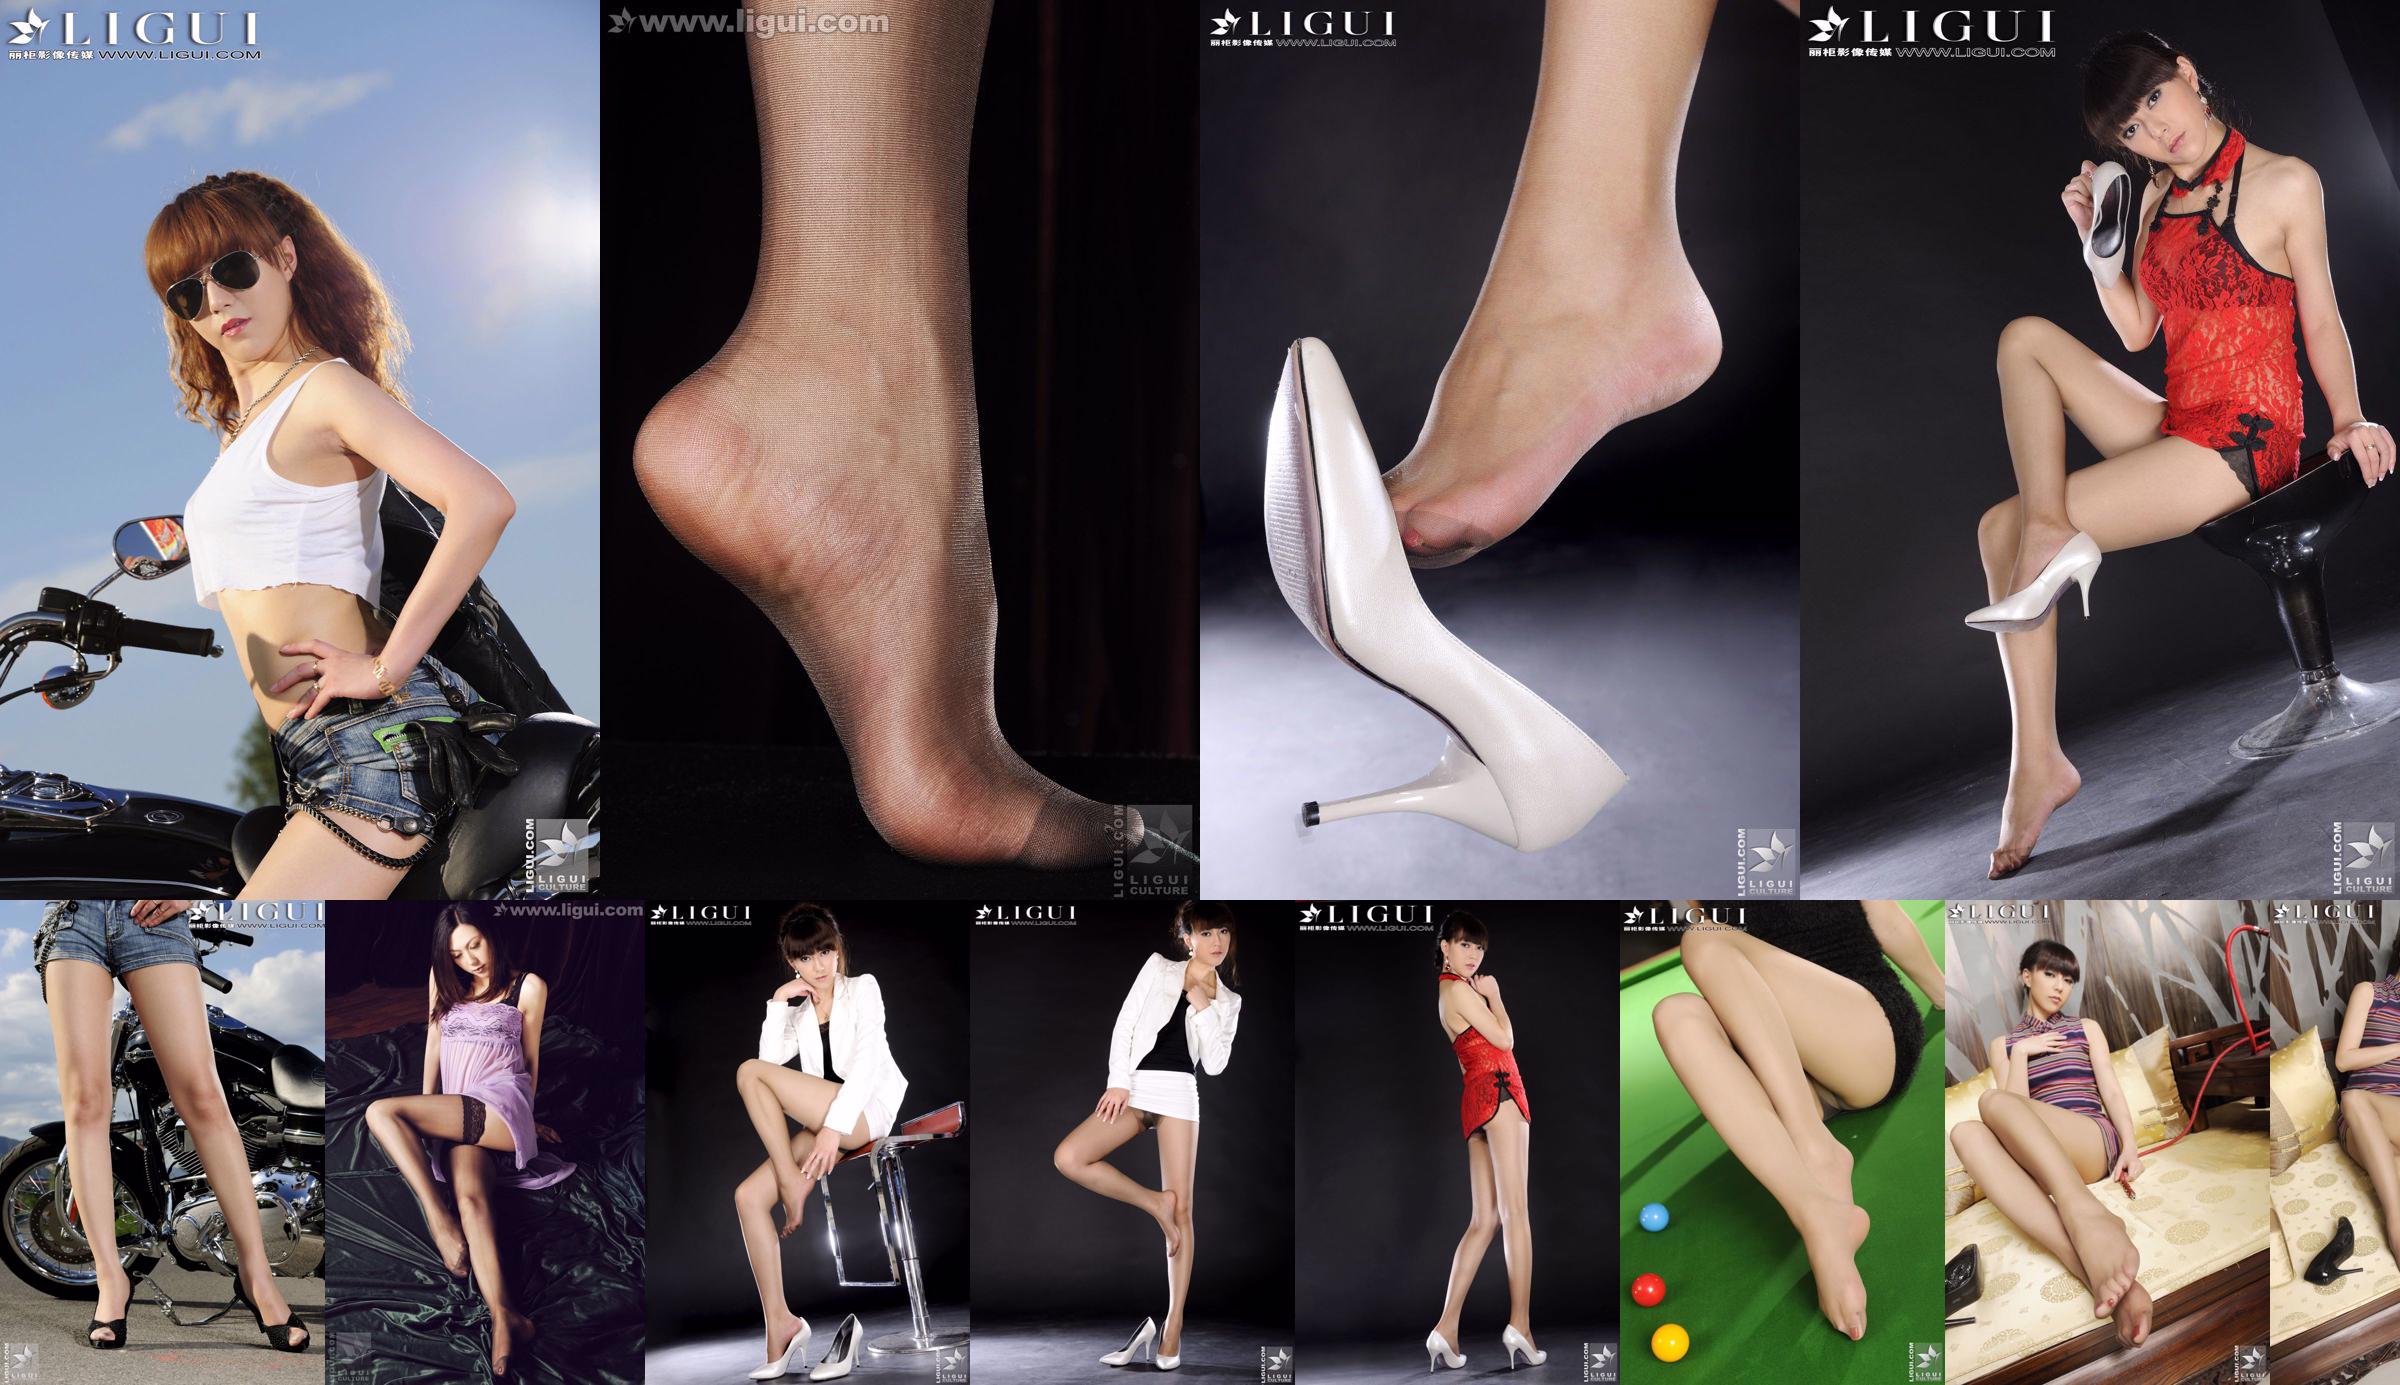 Modello Cherry "Il nuovo favore del mondo della moda" [丽 柜 LiGui] Foto di belle gambe e piedi di giada No.cf08ac Pagina 1